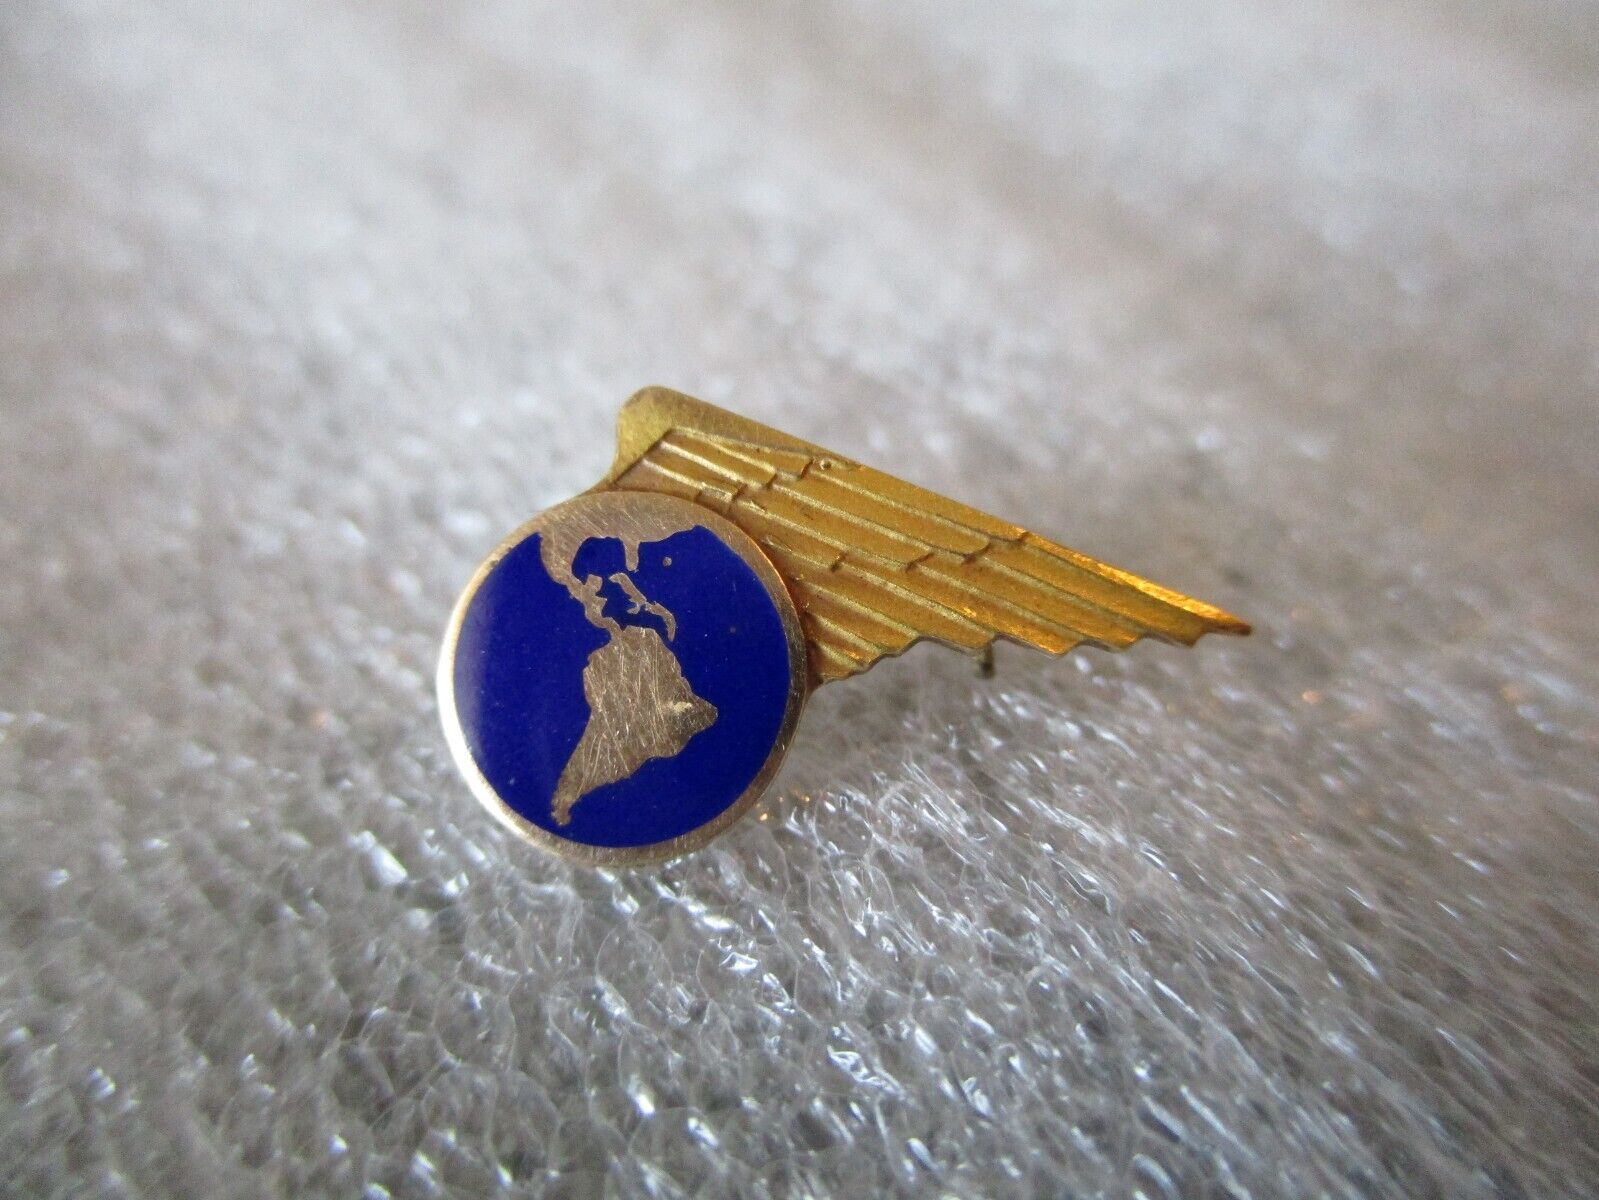 1930s PAN AM SERVICE PIN 10K-TOP YELLOW GOLD & BLUE ENAMEL - #3851 - 1.14g